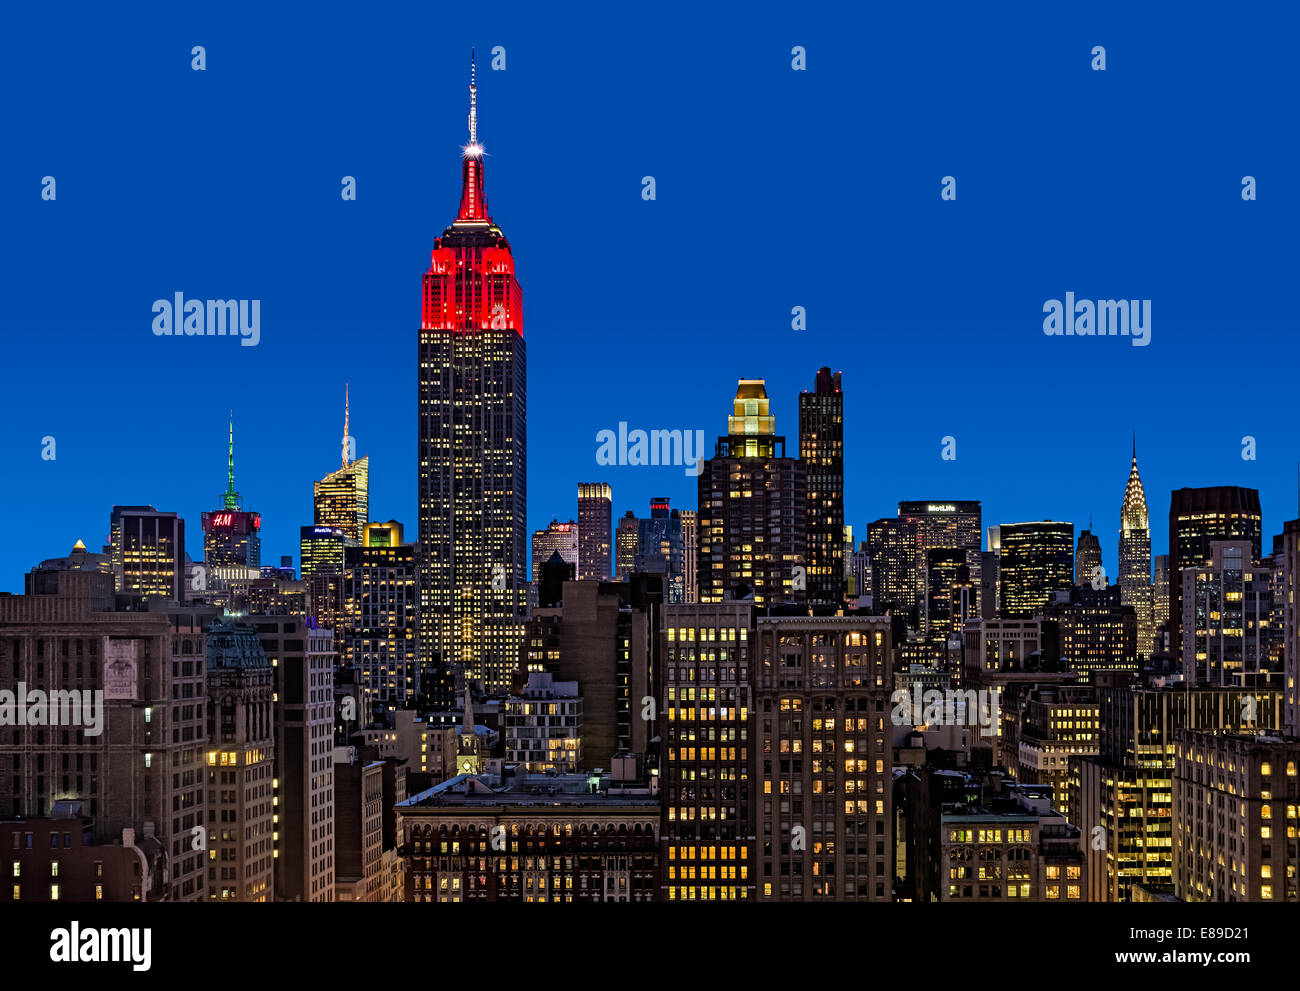 Une vue de dessus pendant l'heure bleue à l'Empire State Building (ESB) ainsi que d'autres habitations dans le quartier Flatiron. Banque D'Images